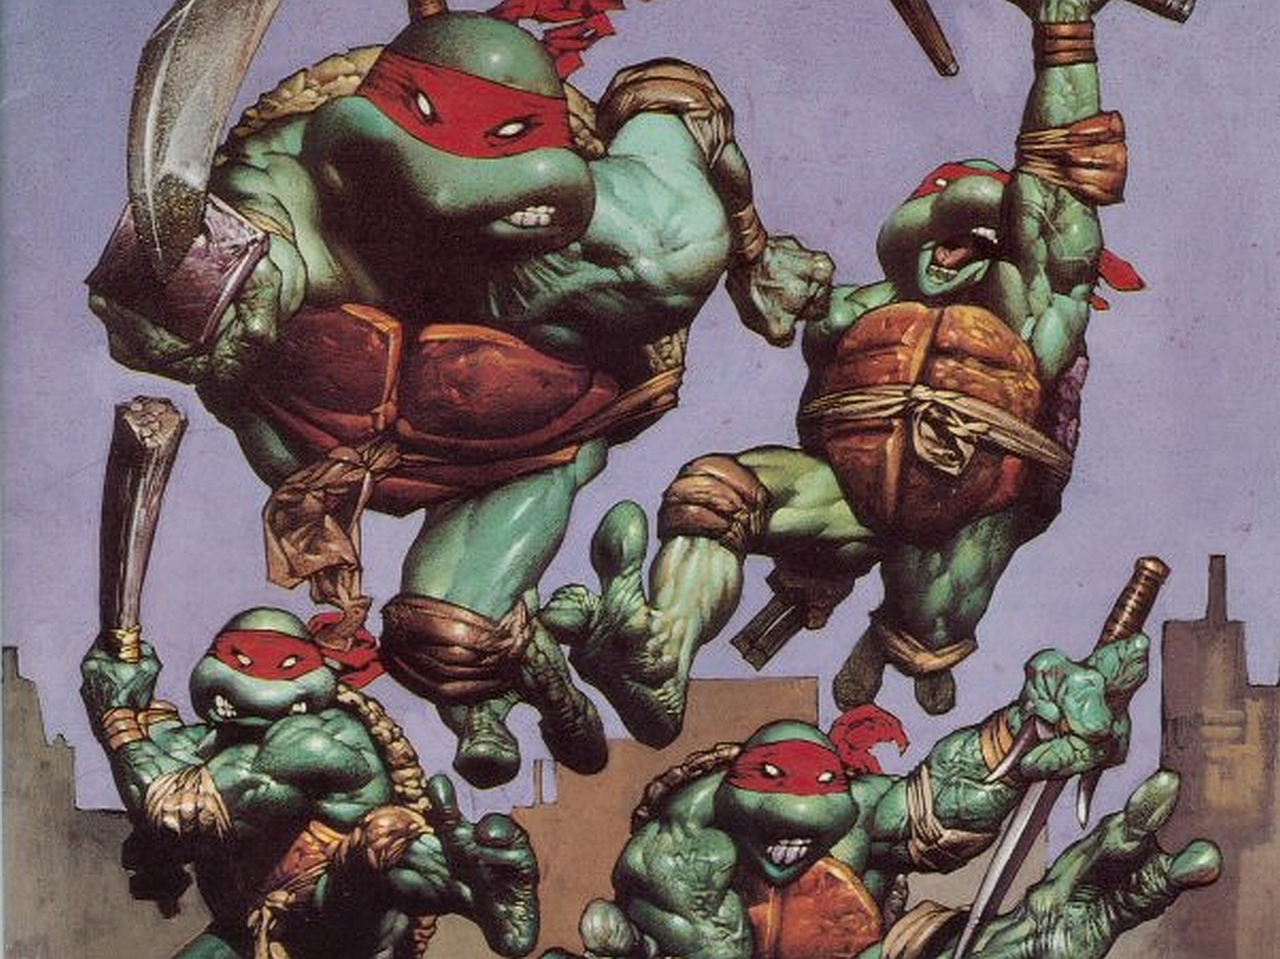 Comics Teenage Mutant Ninja Turtles 1280x959